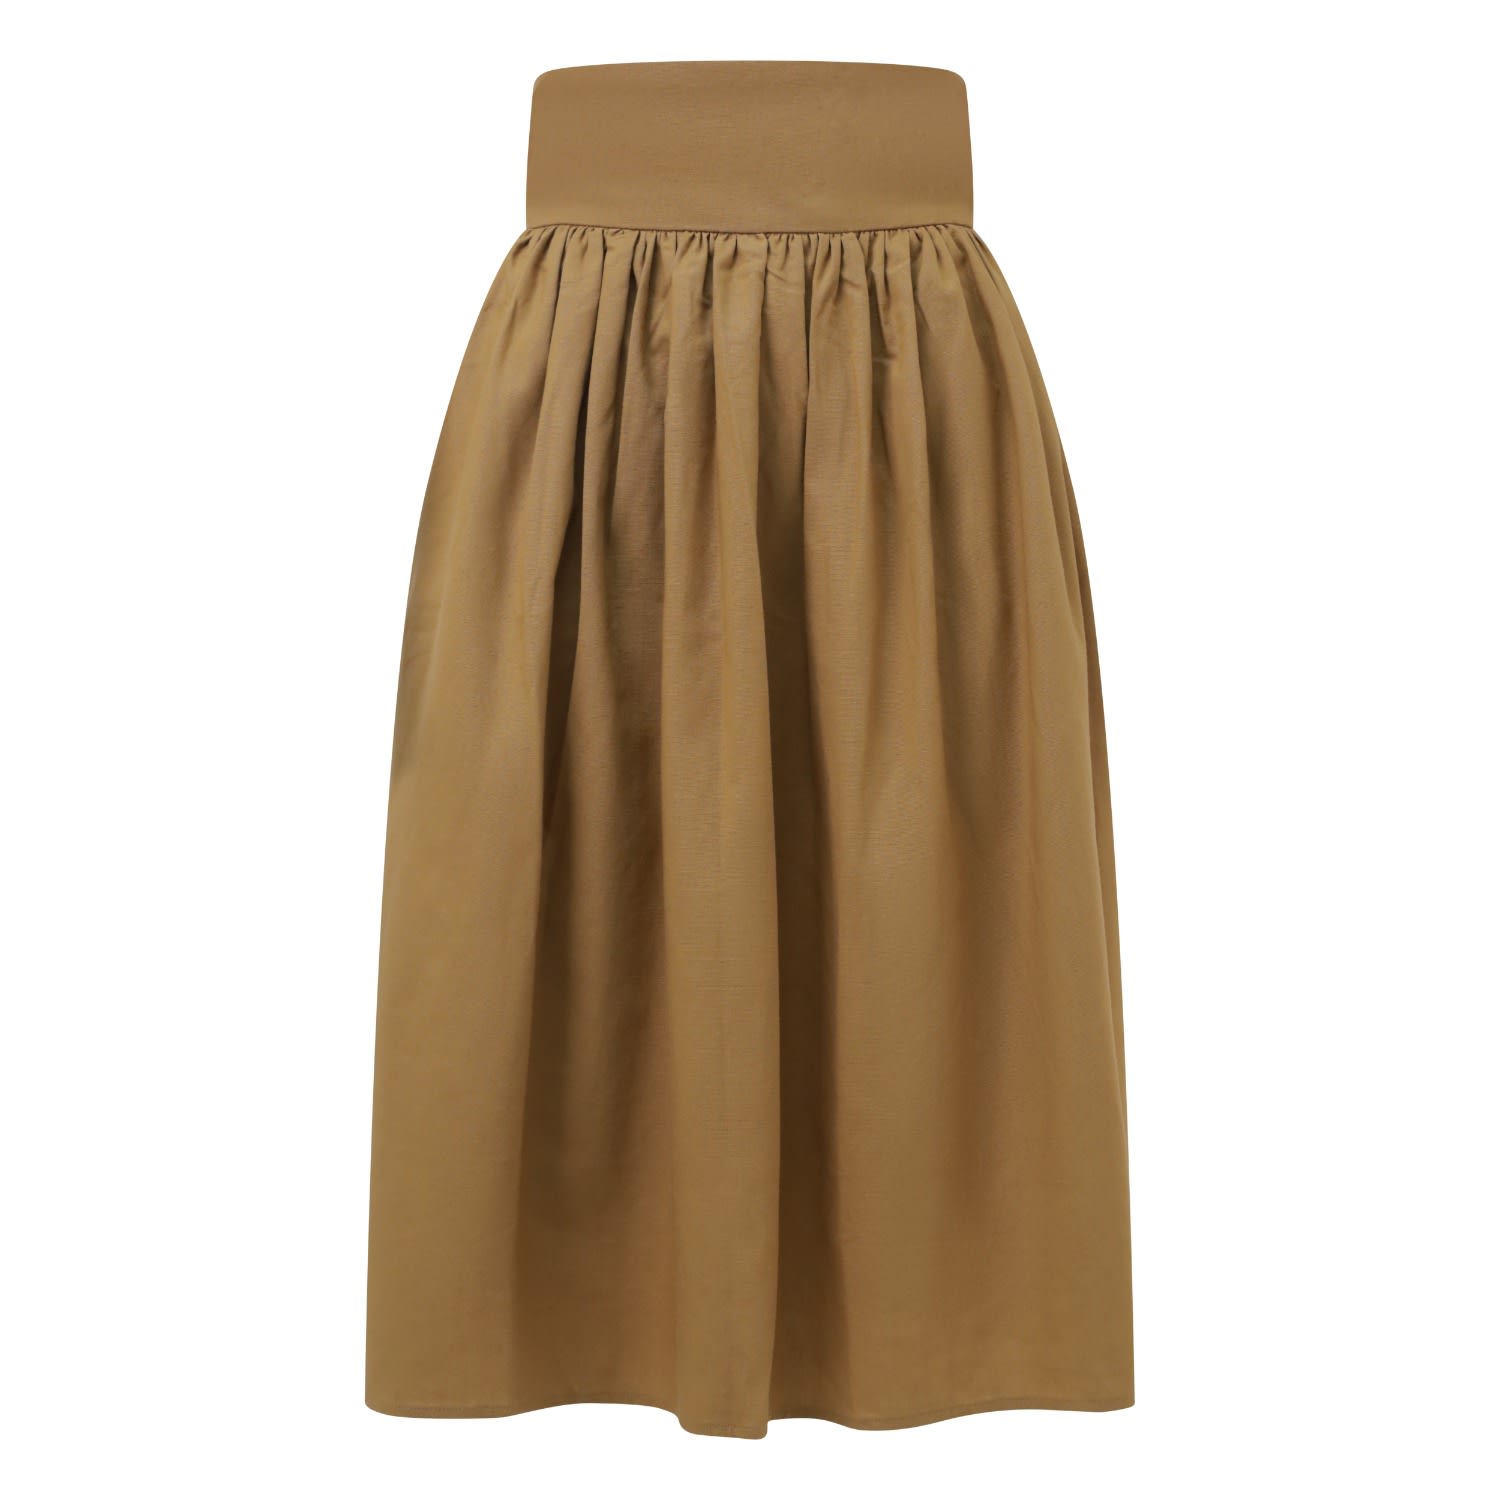 Women’s Brown High Waisted Panel Skirt Medium Balou